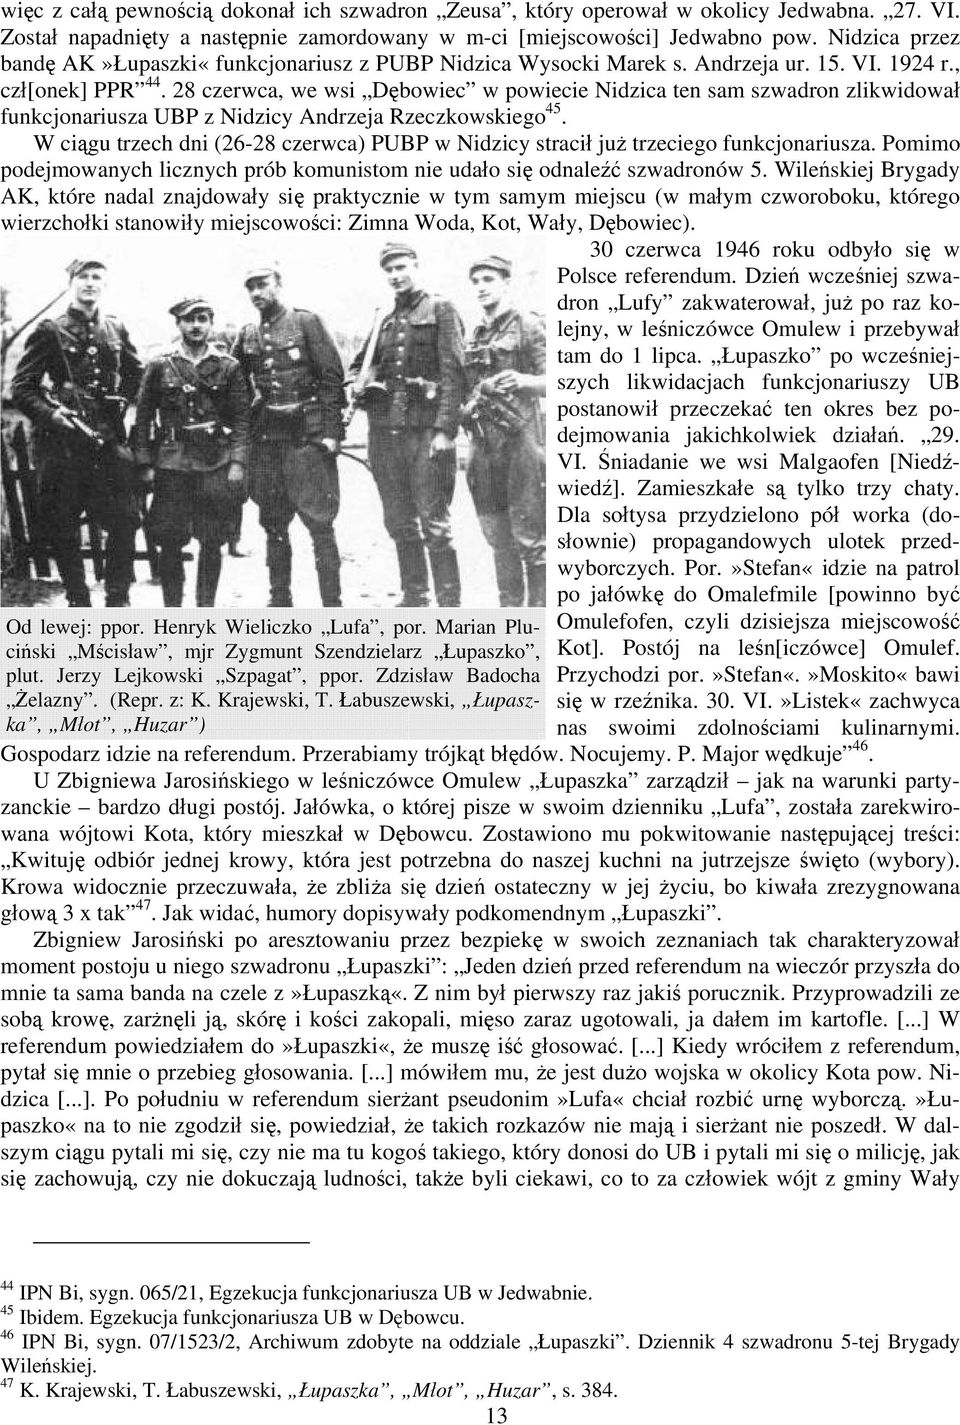 28 czerwca, we wsi Dębowiec w powiecie Nidzica ten sam szwadron zlikwidował funkcjonariusza UBP z Nidzicy Andrzeja Rzeczkowskiego 45.